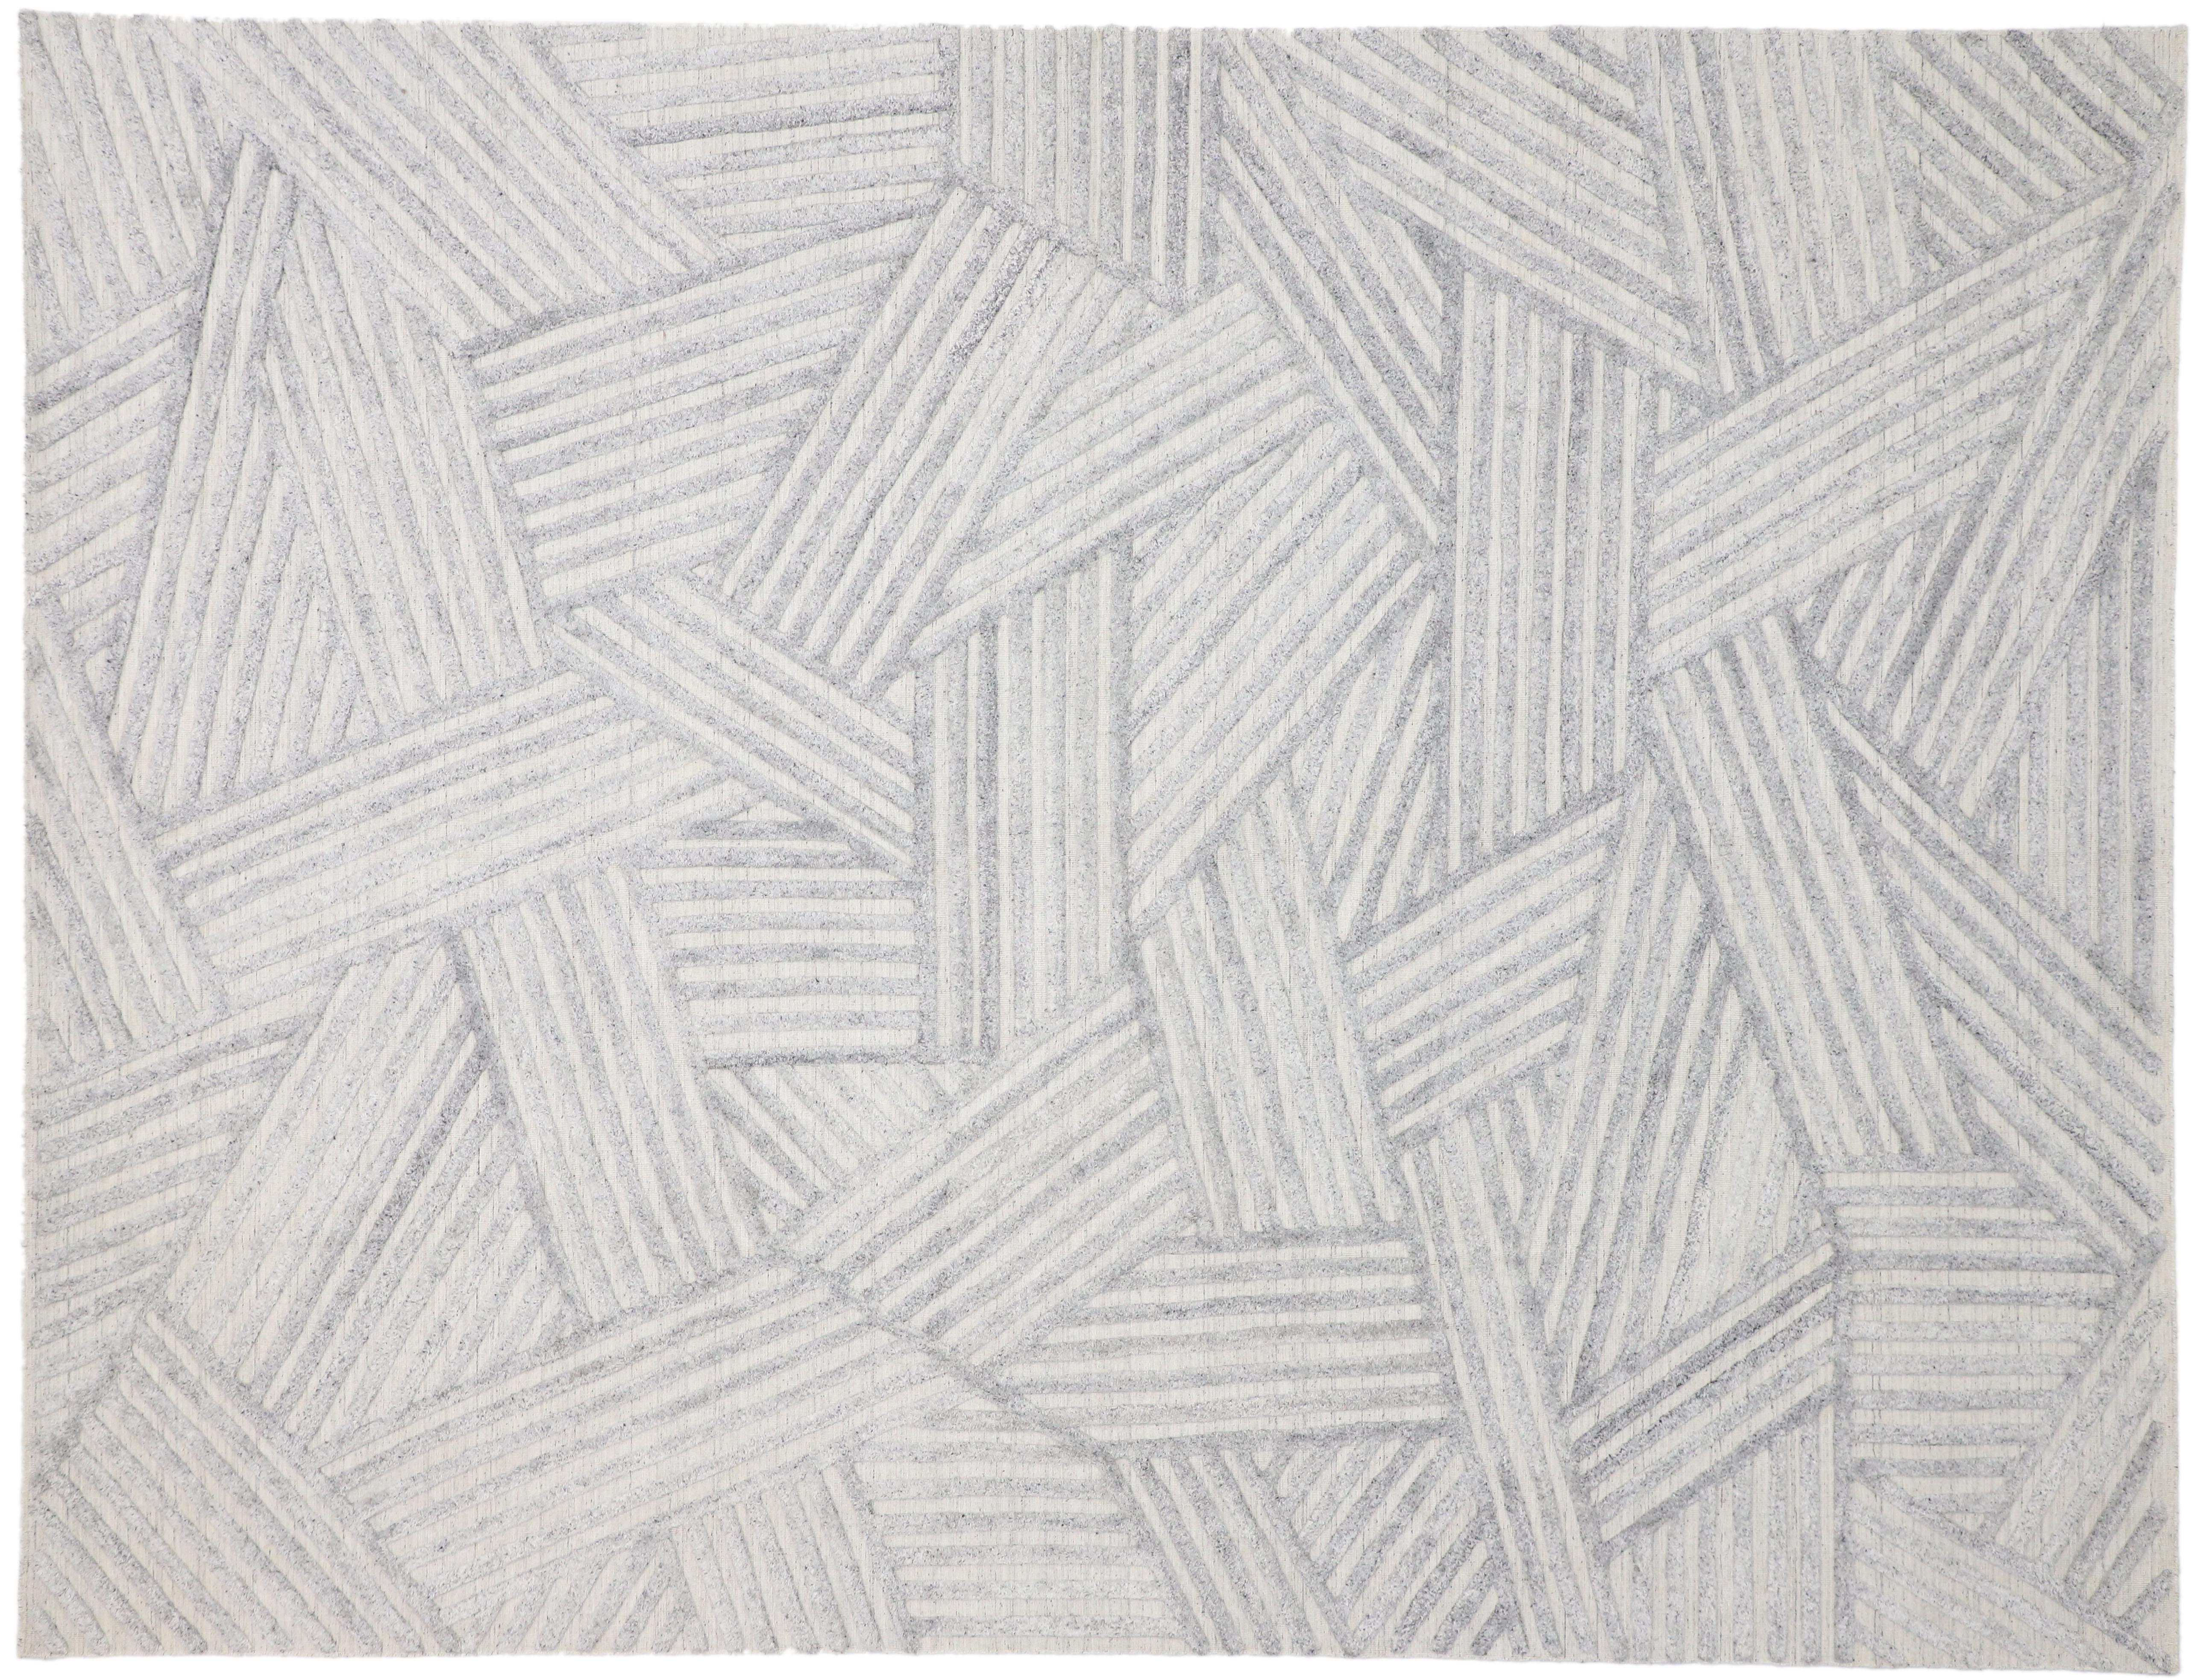 Coton Tapis gris très texturé, la sophistication moderne rencontre le zen